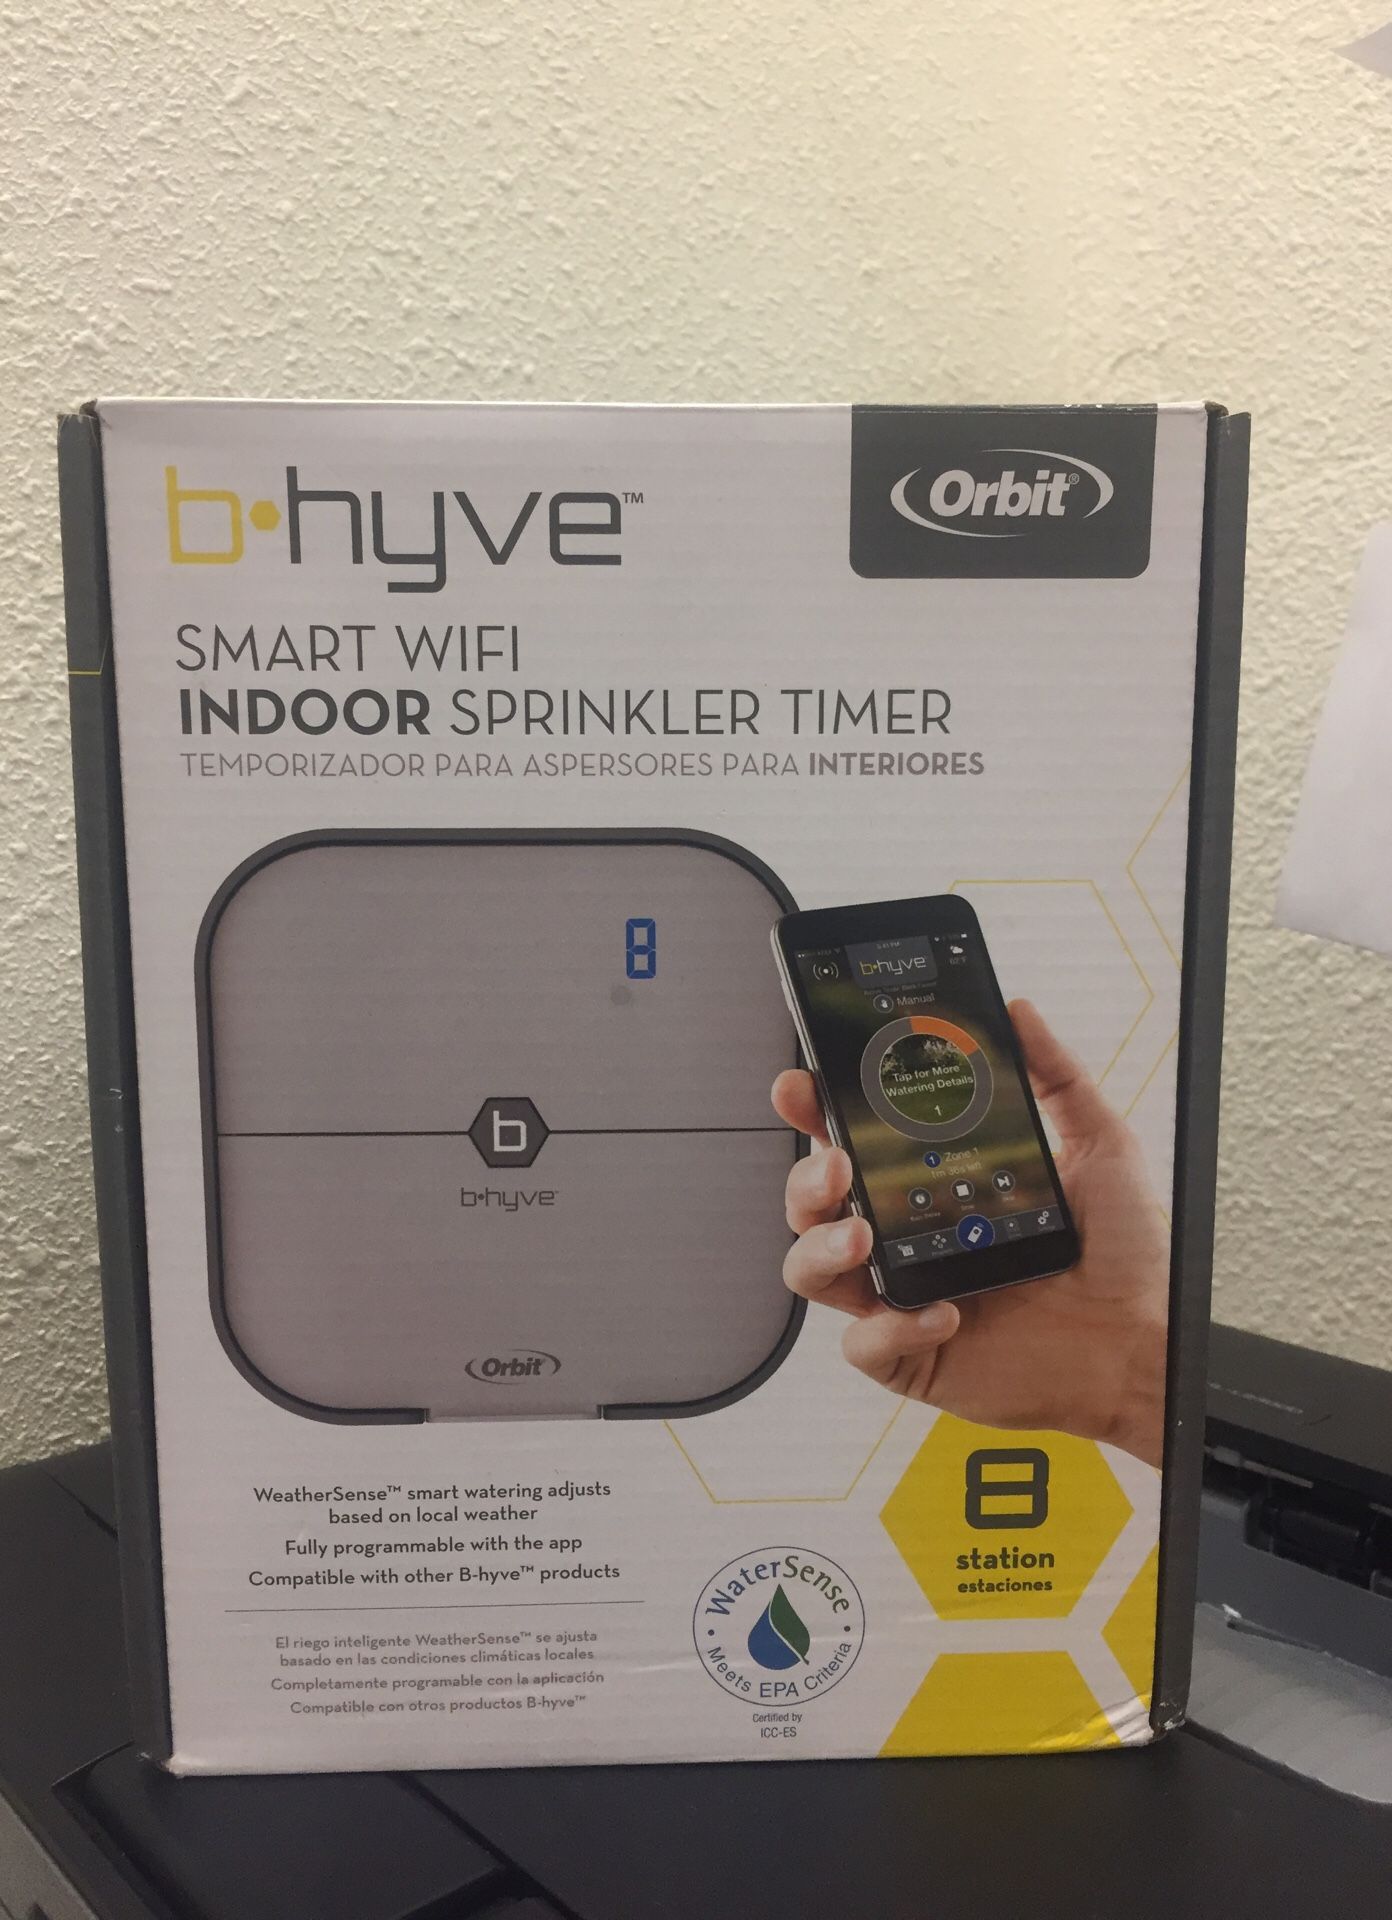 Bhyve 8 station smart WiFi indoor sprinkler timer